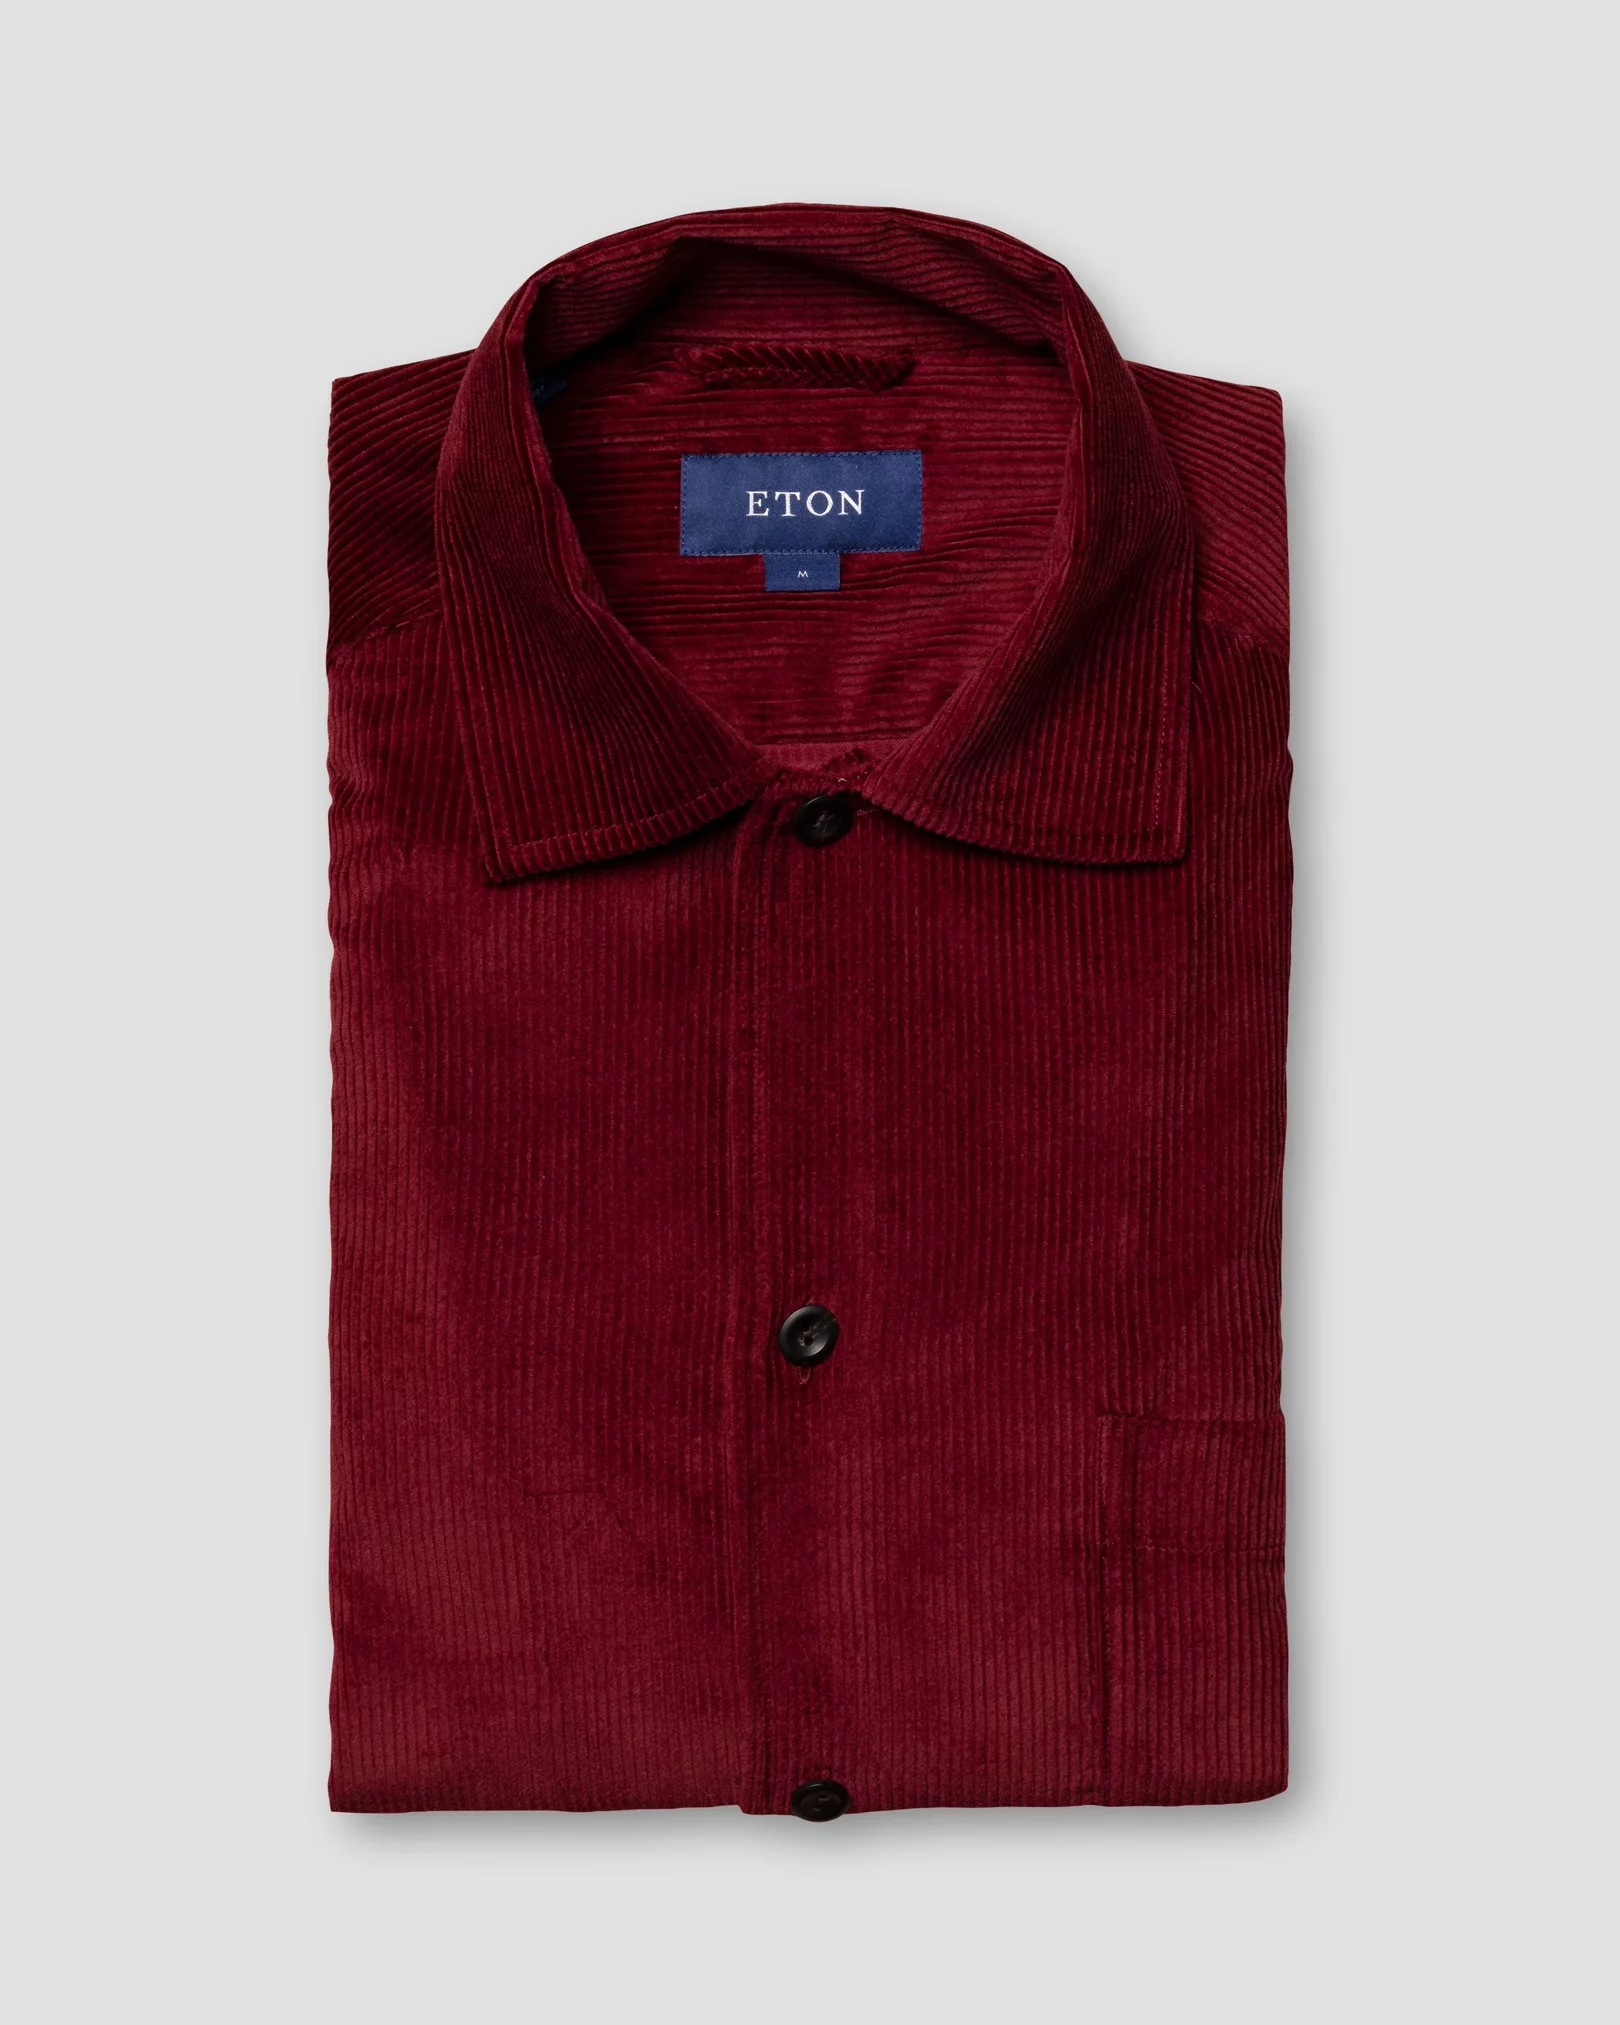 Eton - burgundy corduroy overshirt turn down straight sleeve end regular